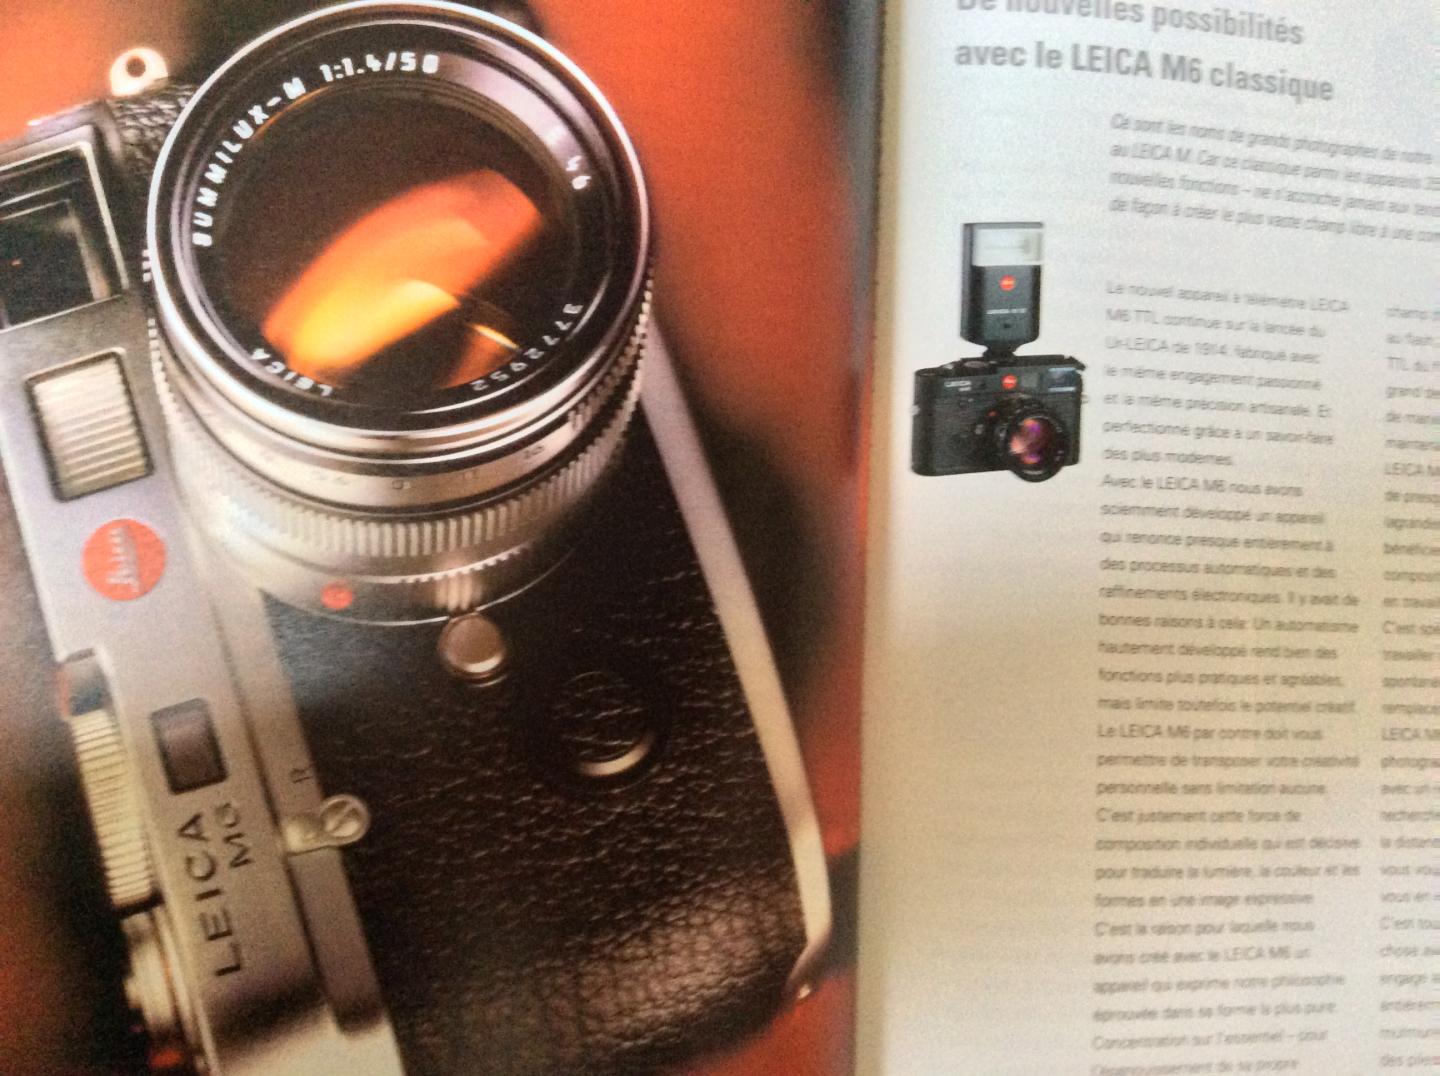  - Leica. Le programme 1913 - 1998